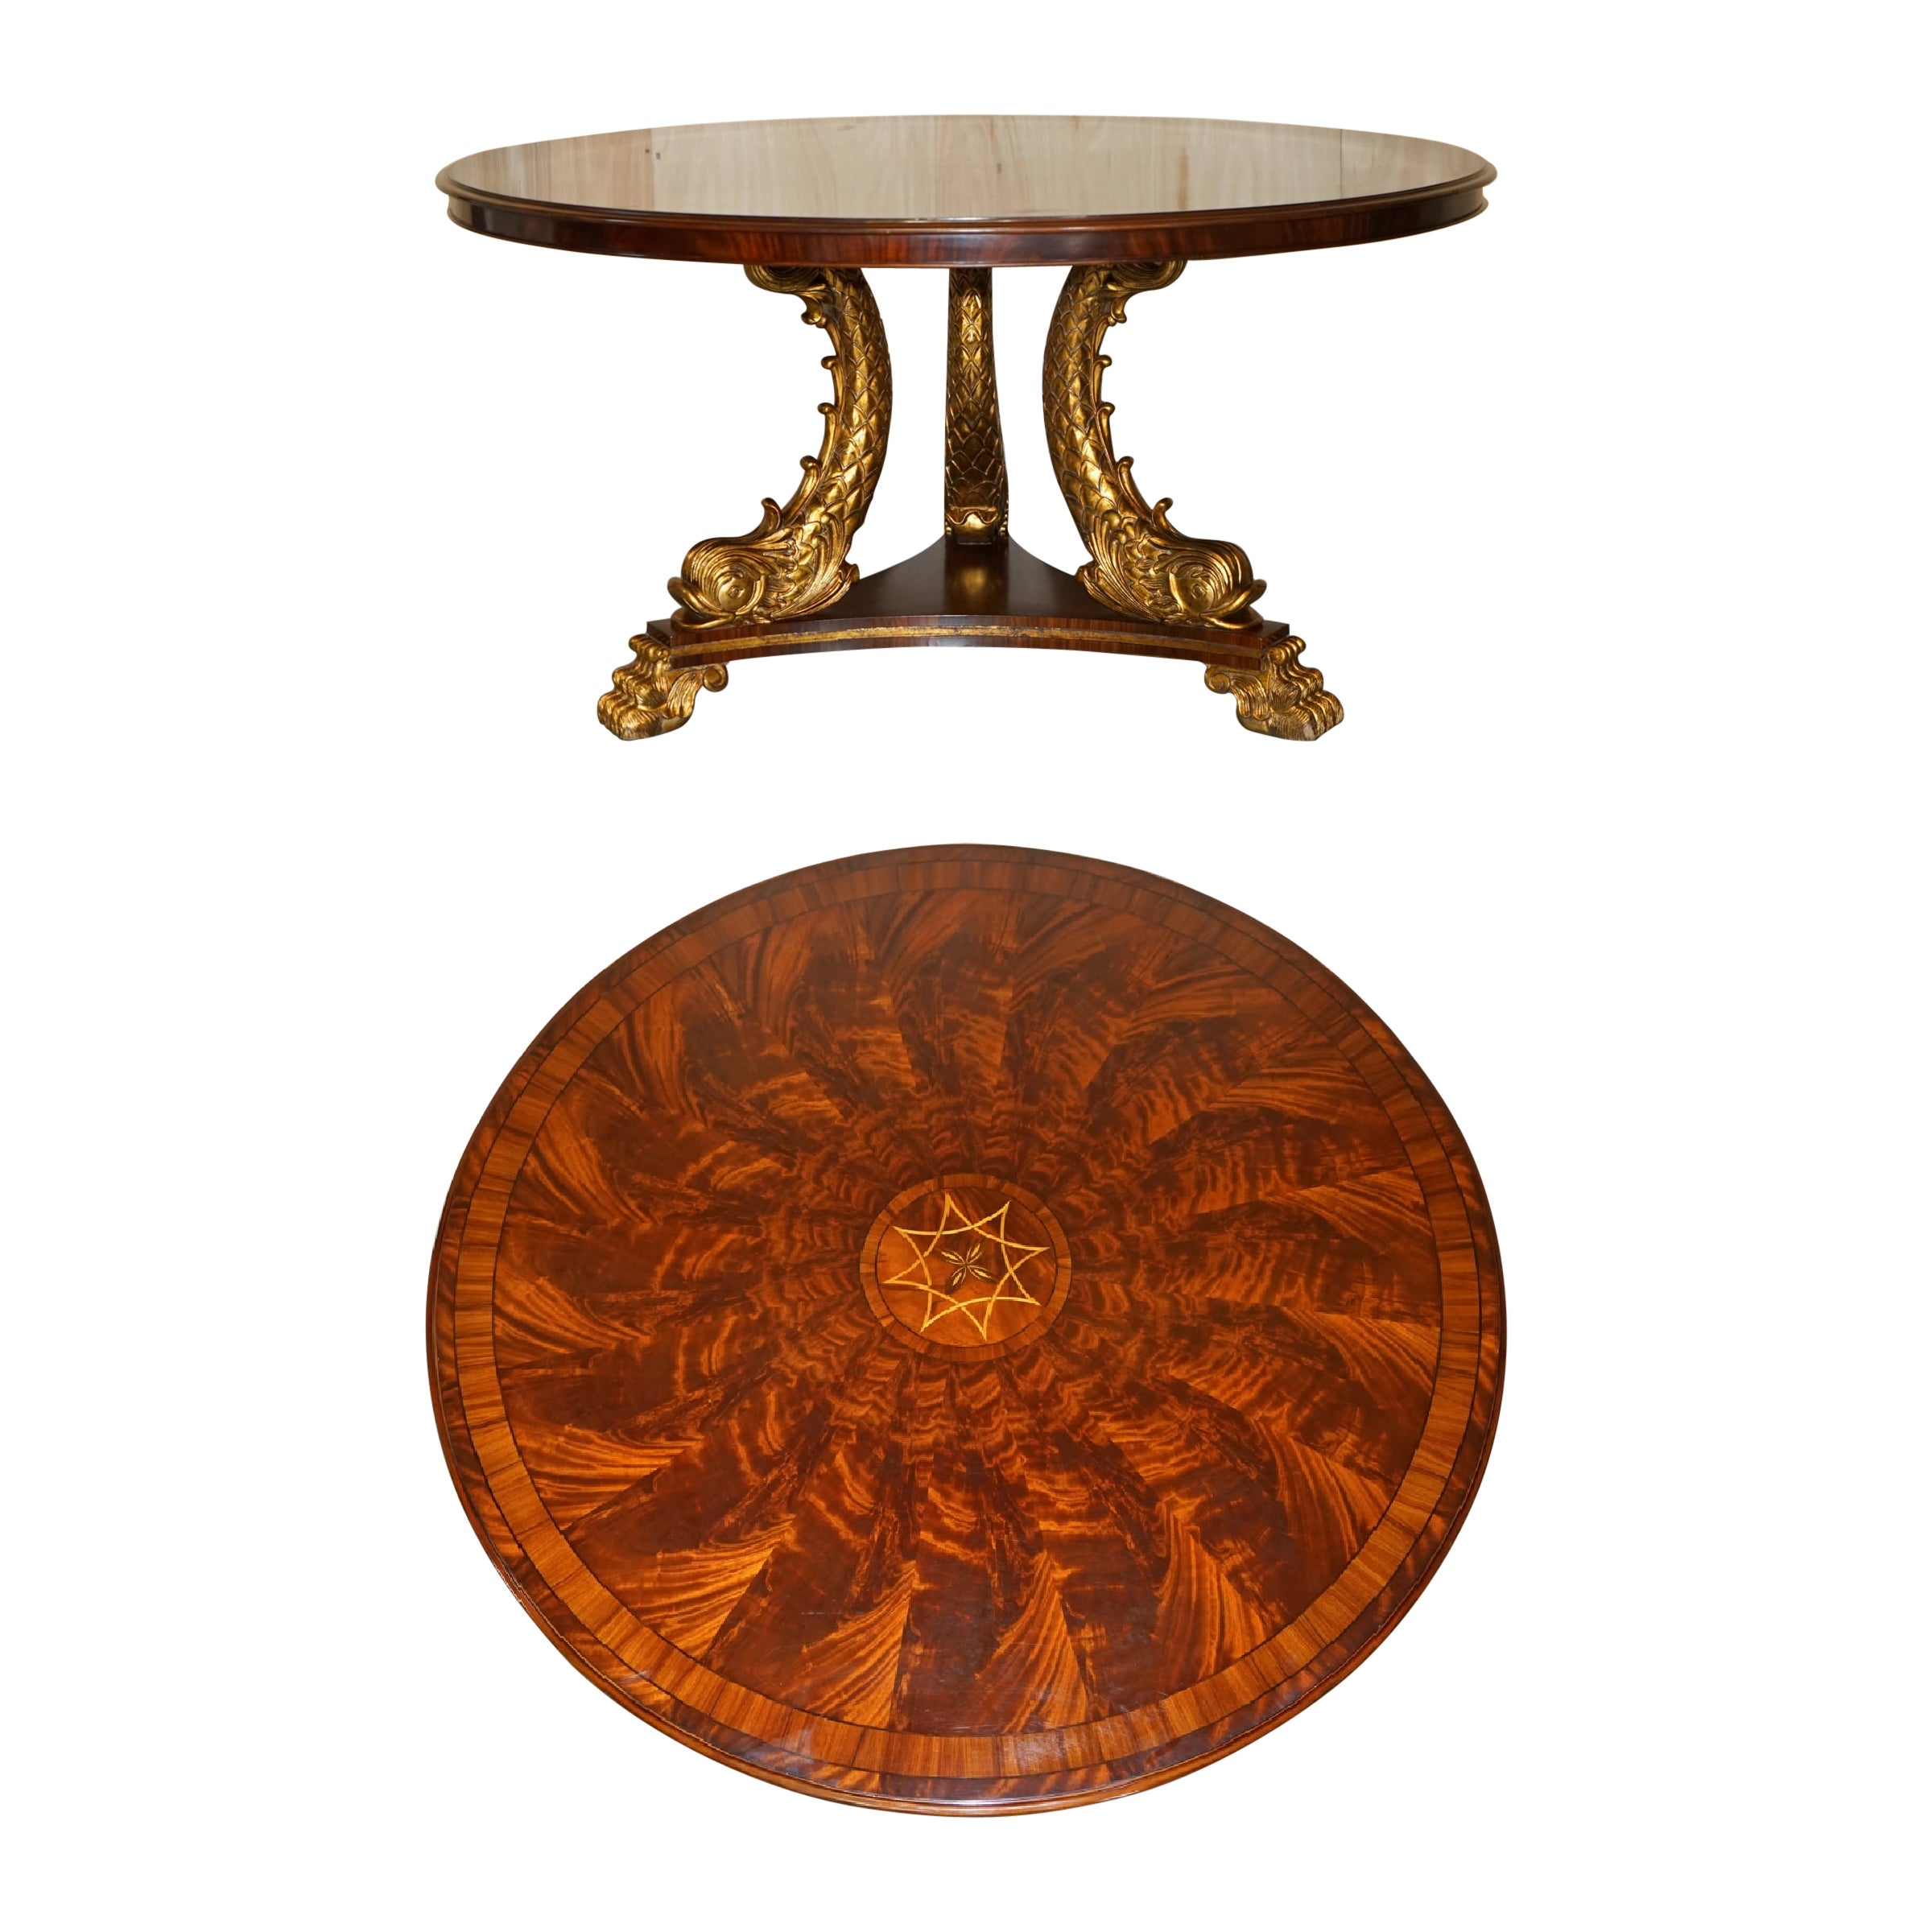 Squisito tavolo da pranzo Delfino in legno dorato in stile Regency con piano in legno duro fiammato